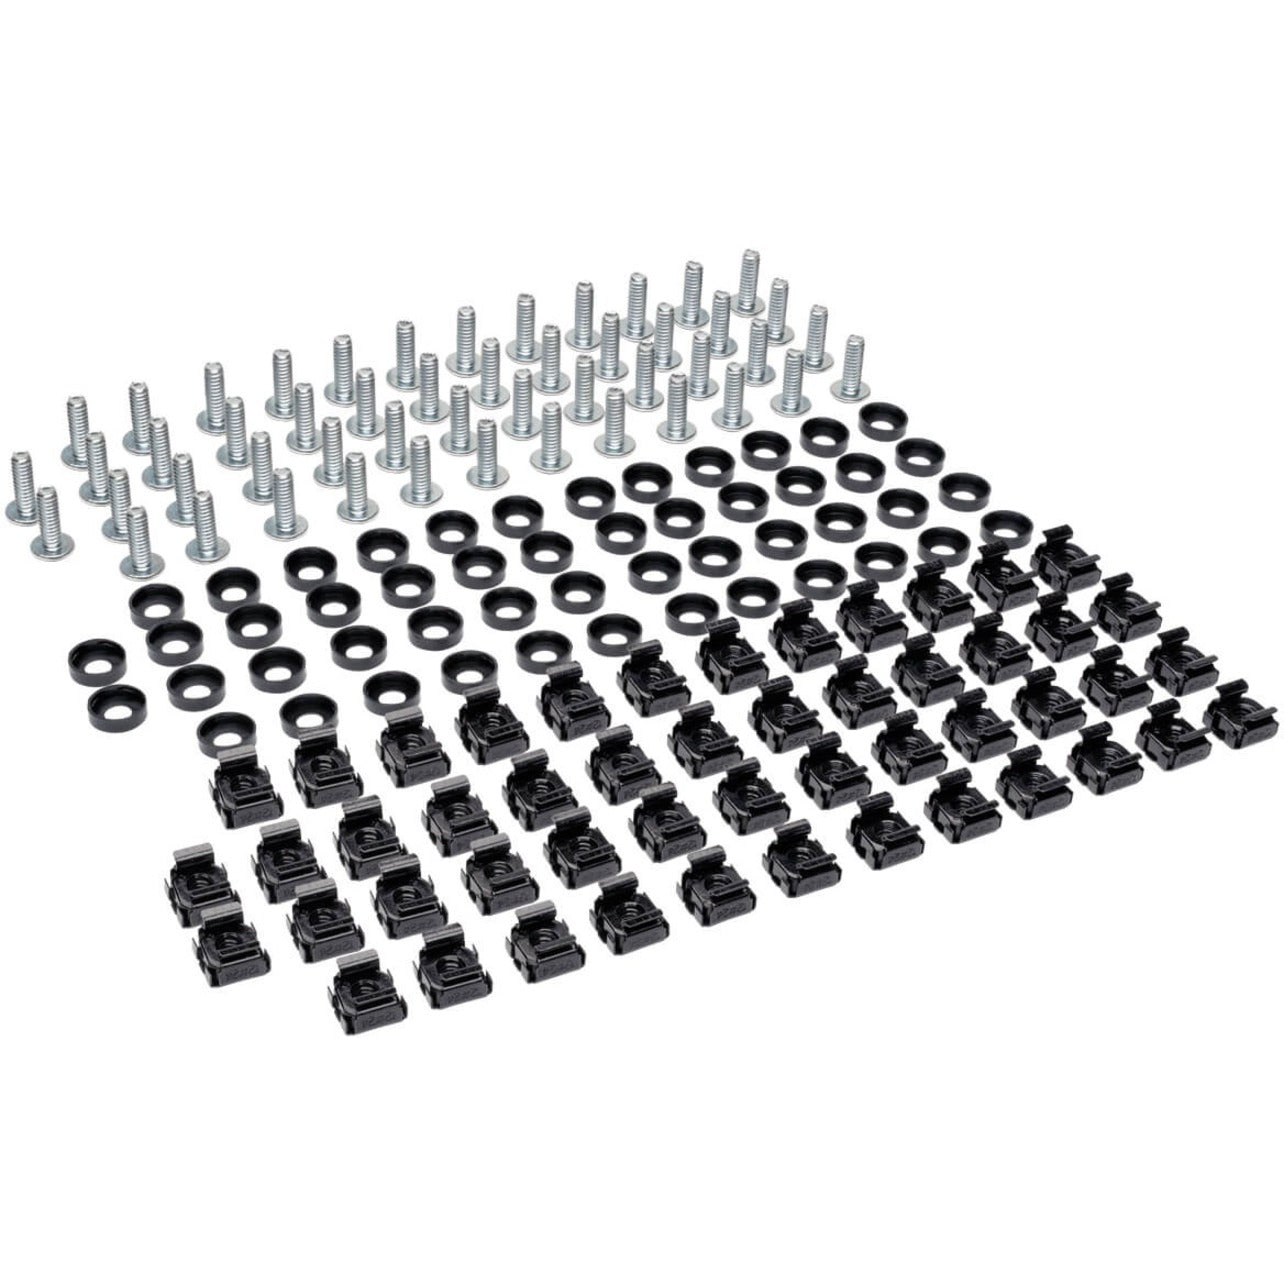 Tripp Lite SRCAGENUTS1224 Kit di hardware per fori quadrati (Include 50 pezzi di viti e rondelle 12-24.) Fissaggio